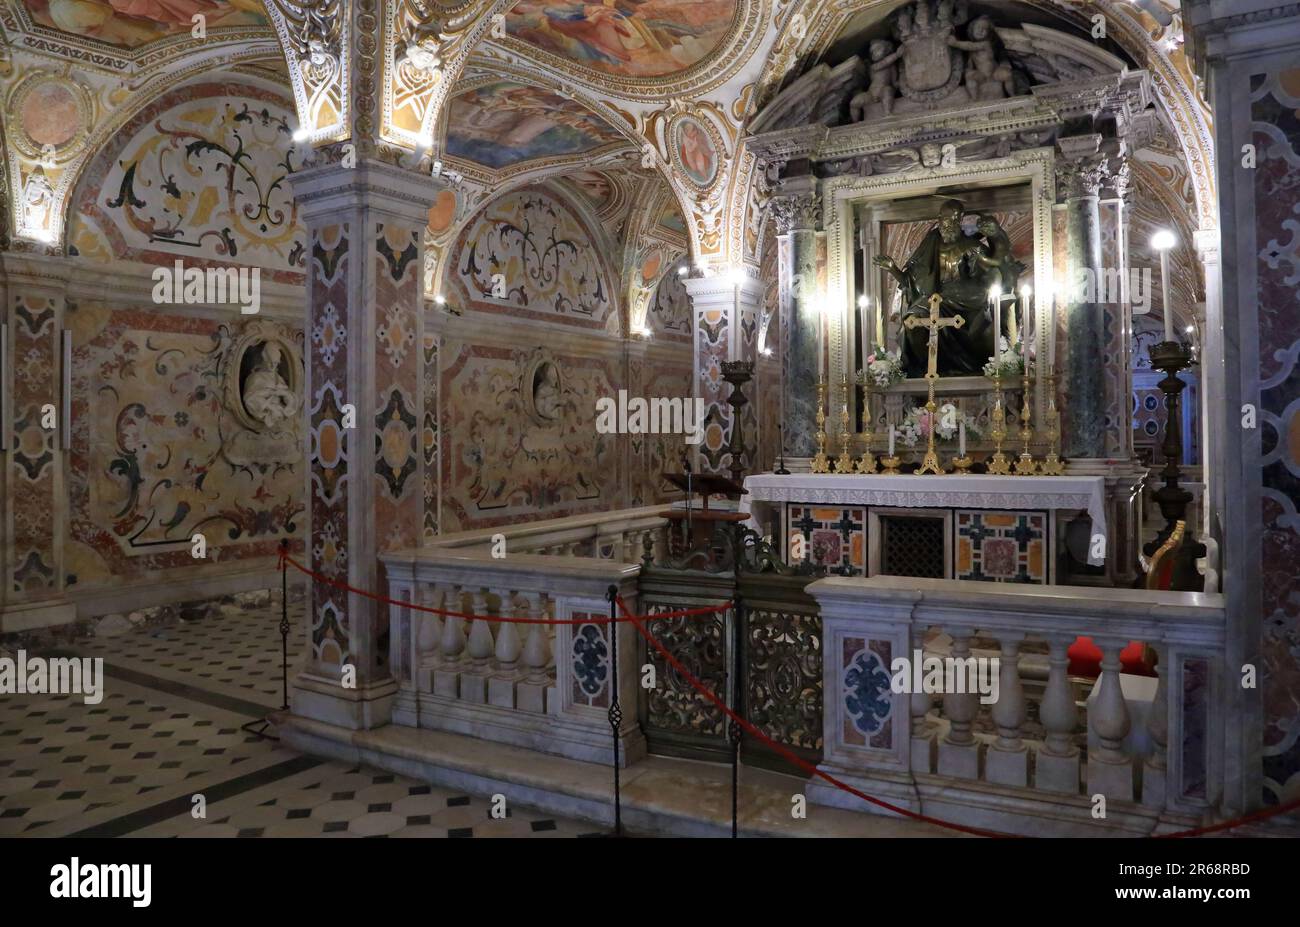 The Crypt of Salerno Cathedral, Italy. Cripta del duomo di Salerno Stock Photo